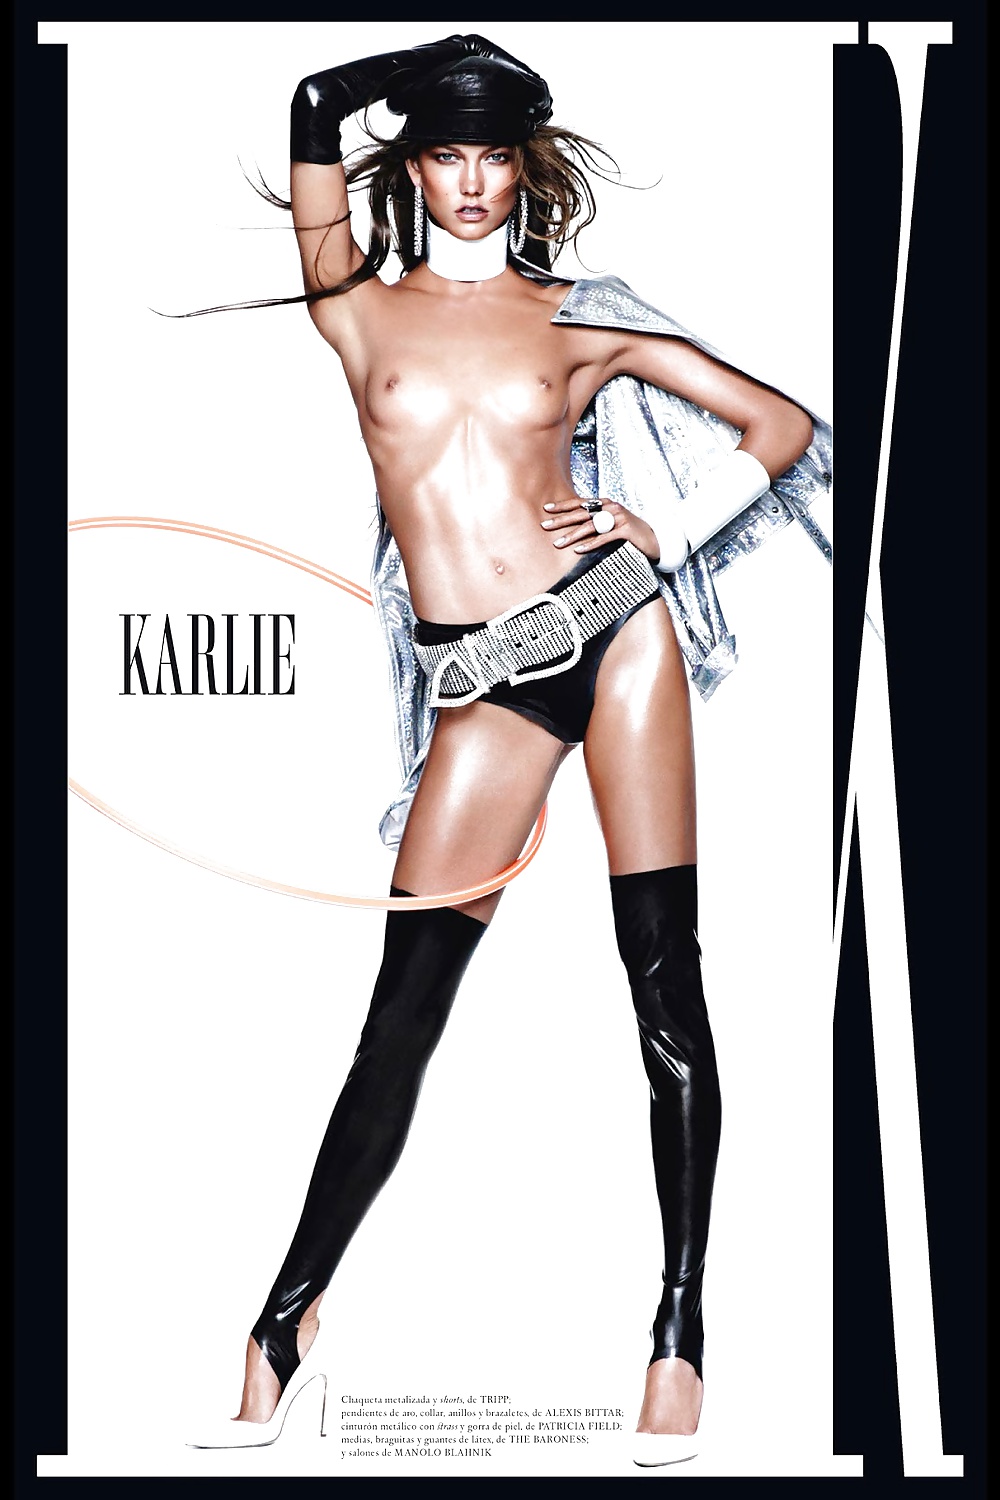 Karlie kloss - modella sexy di victoria's secret
 #17595704